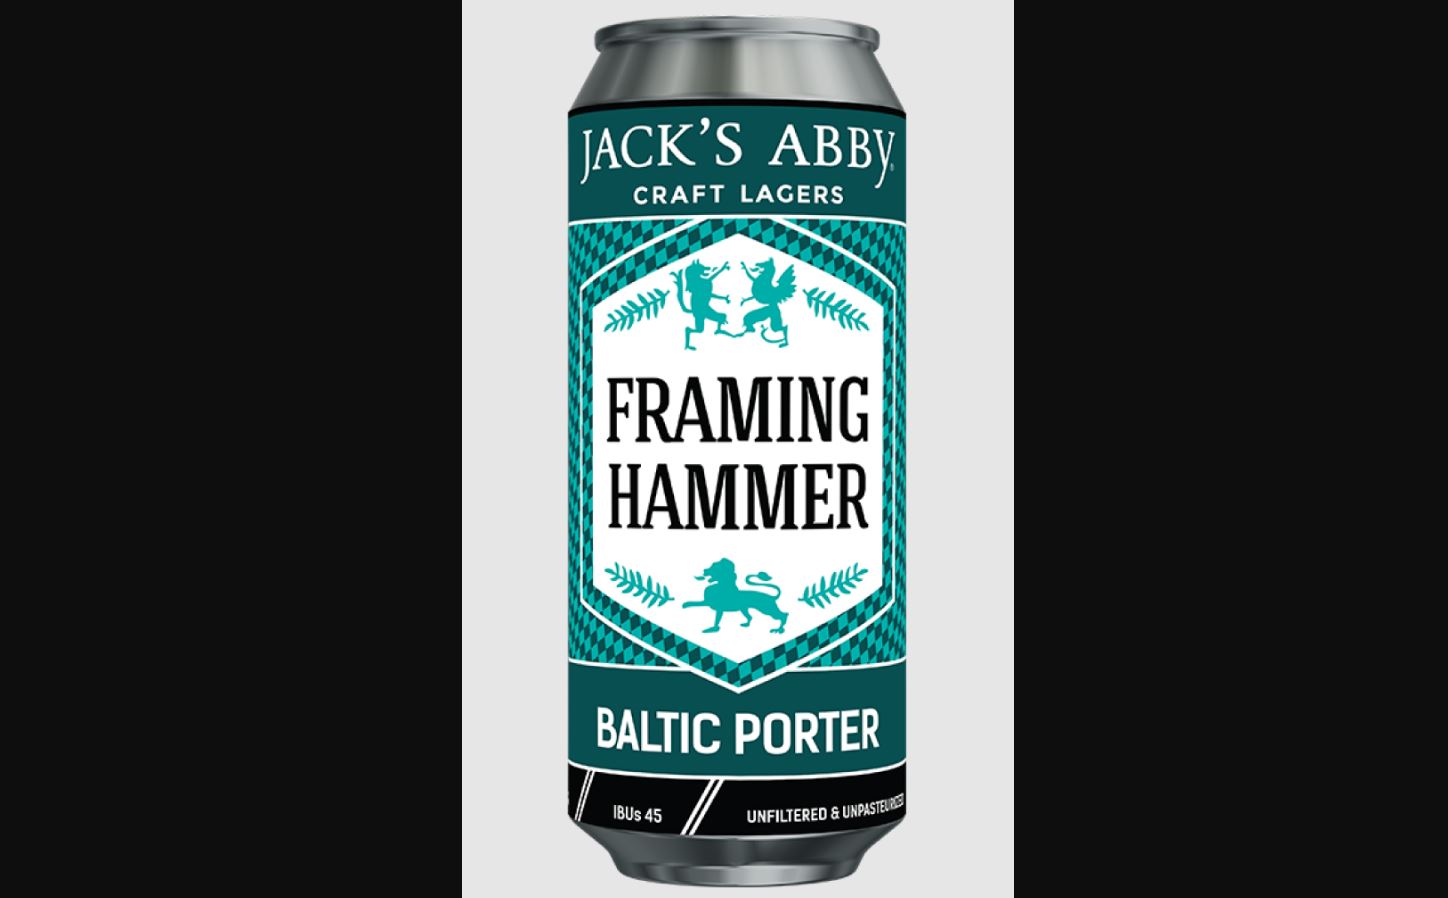 Jack’s Abby Framing Hammer